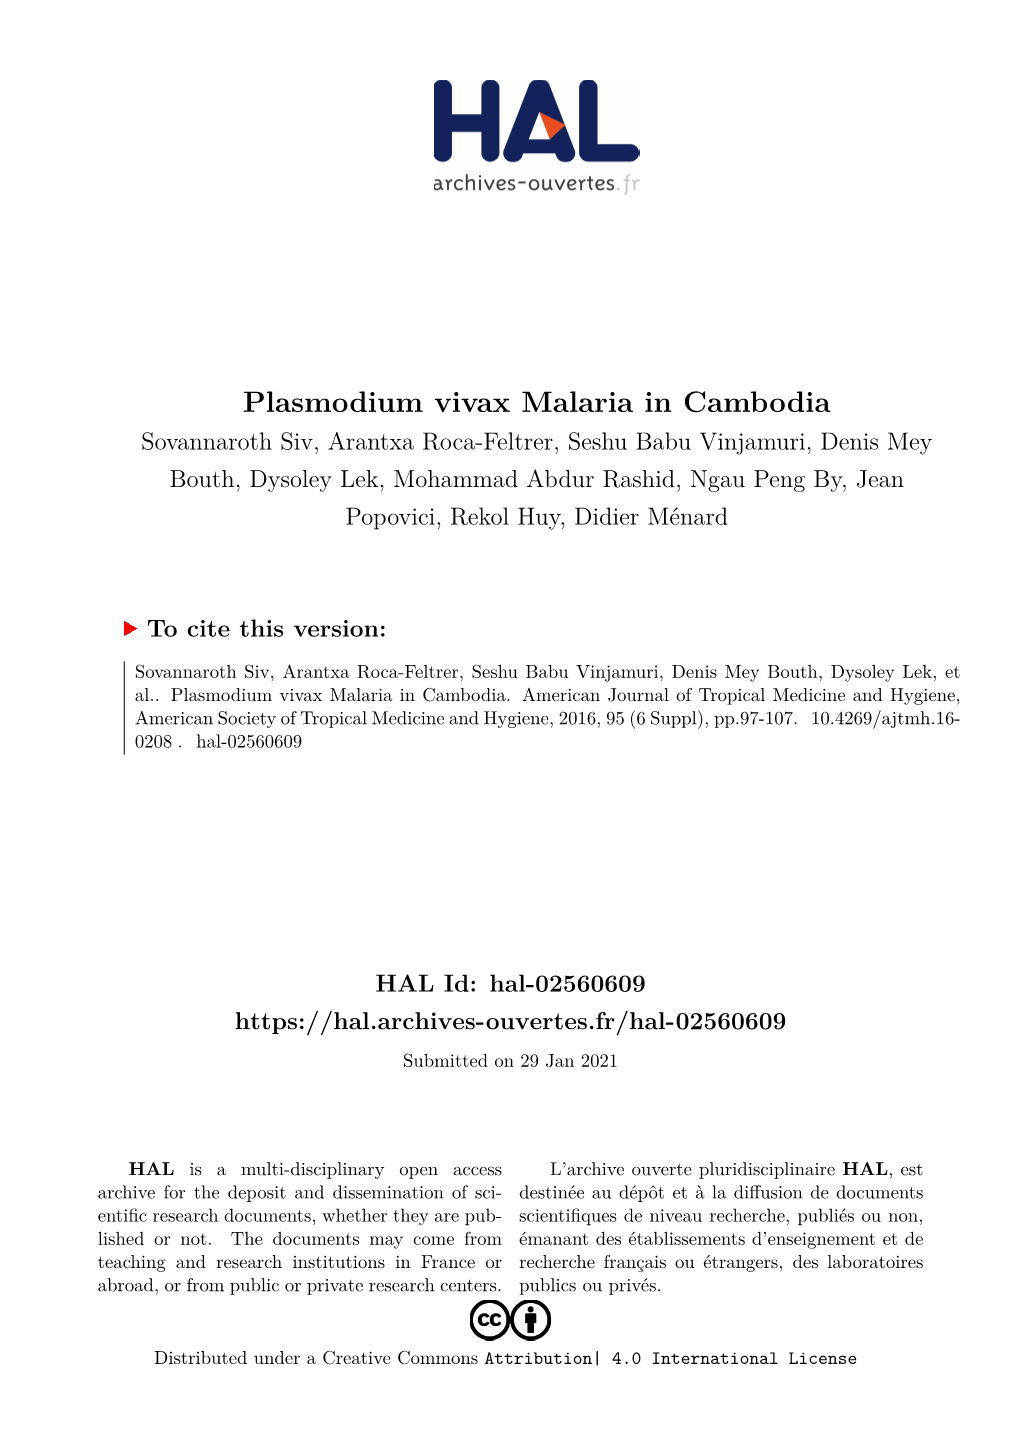 Plasmodium Vivax Malaria in Cambodia